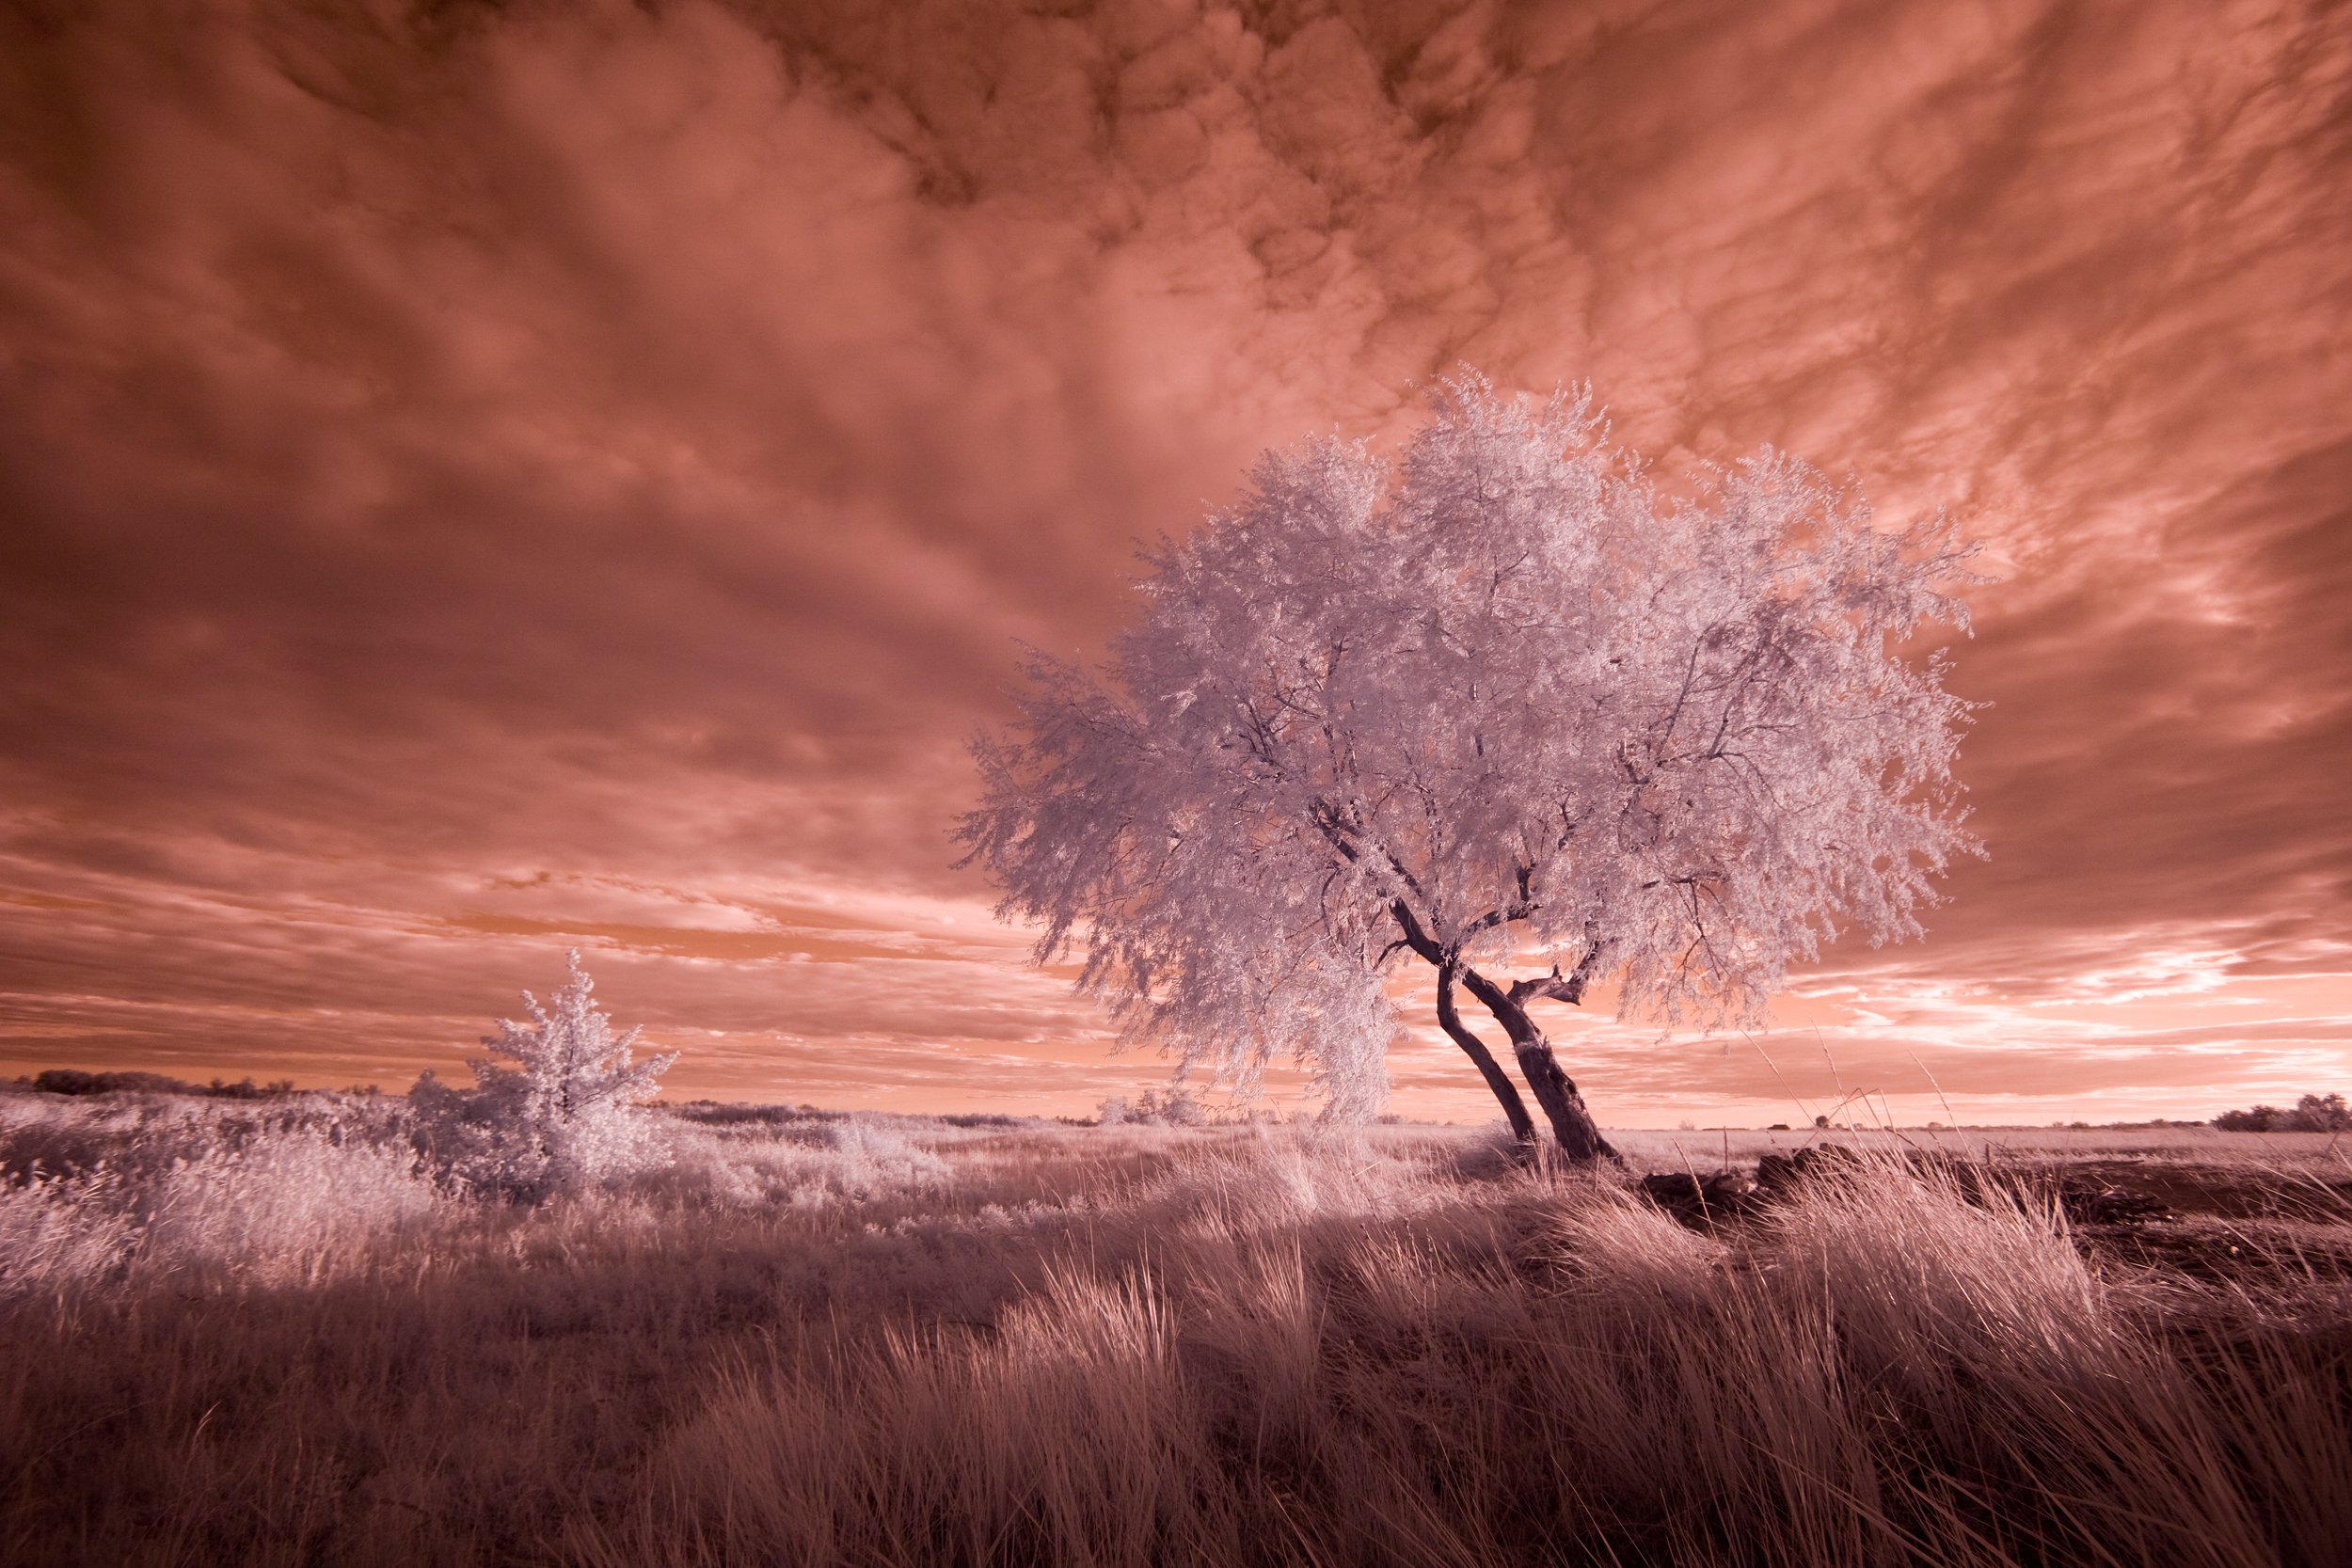 ir,infrared,tree,landscape,sky, инфракрасный, небо, дерево,пейзаж,ландшафт,фильтр,, Олег Грачёв